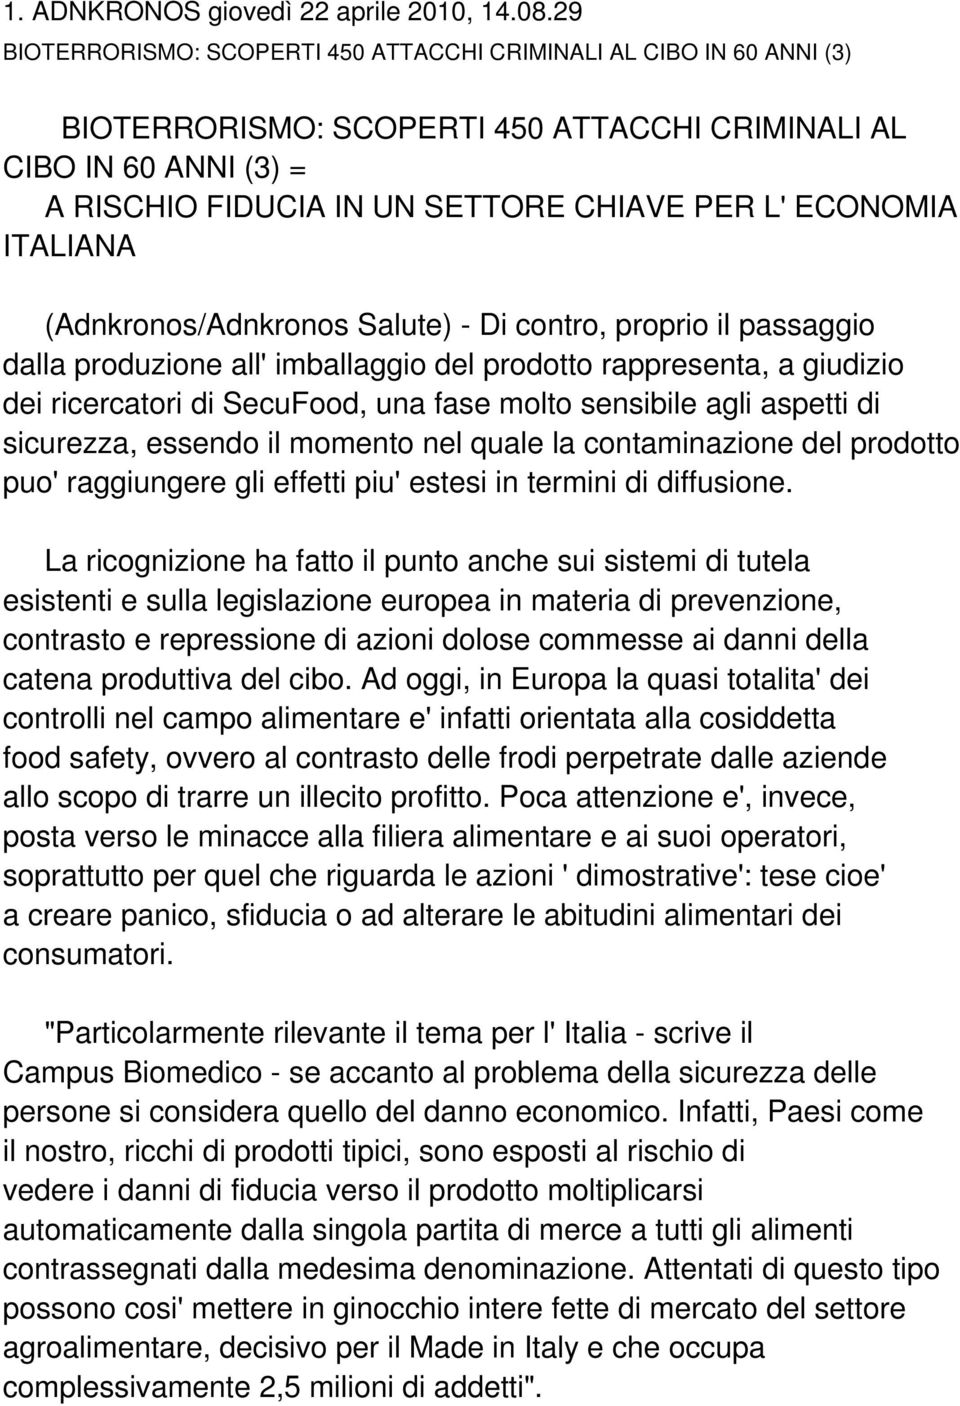 ITALIANA (Adnkronos/Adnkronos Salute) - Di contro, proprio il passaggio dalla produzione all' imballaggio del prodotto rappresenta, a giudizio dei ricercatori di SecuFood, una fase molto sensibile